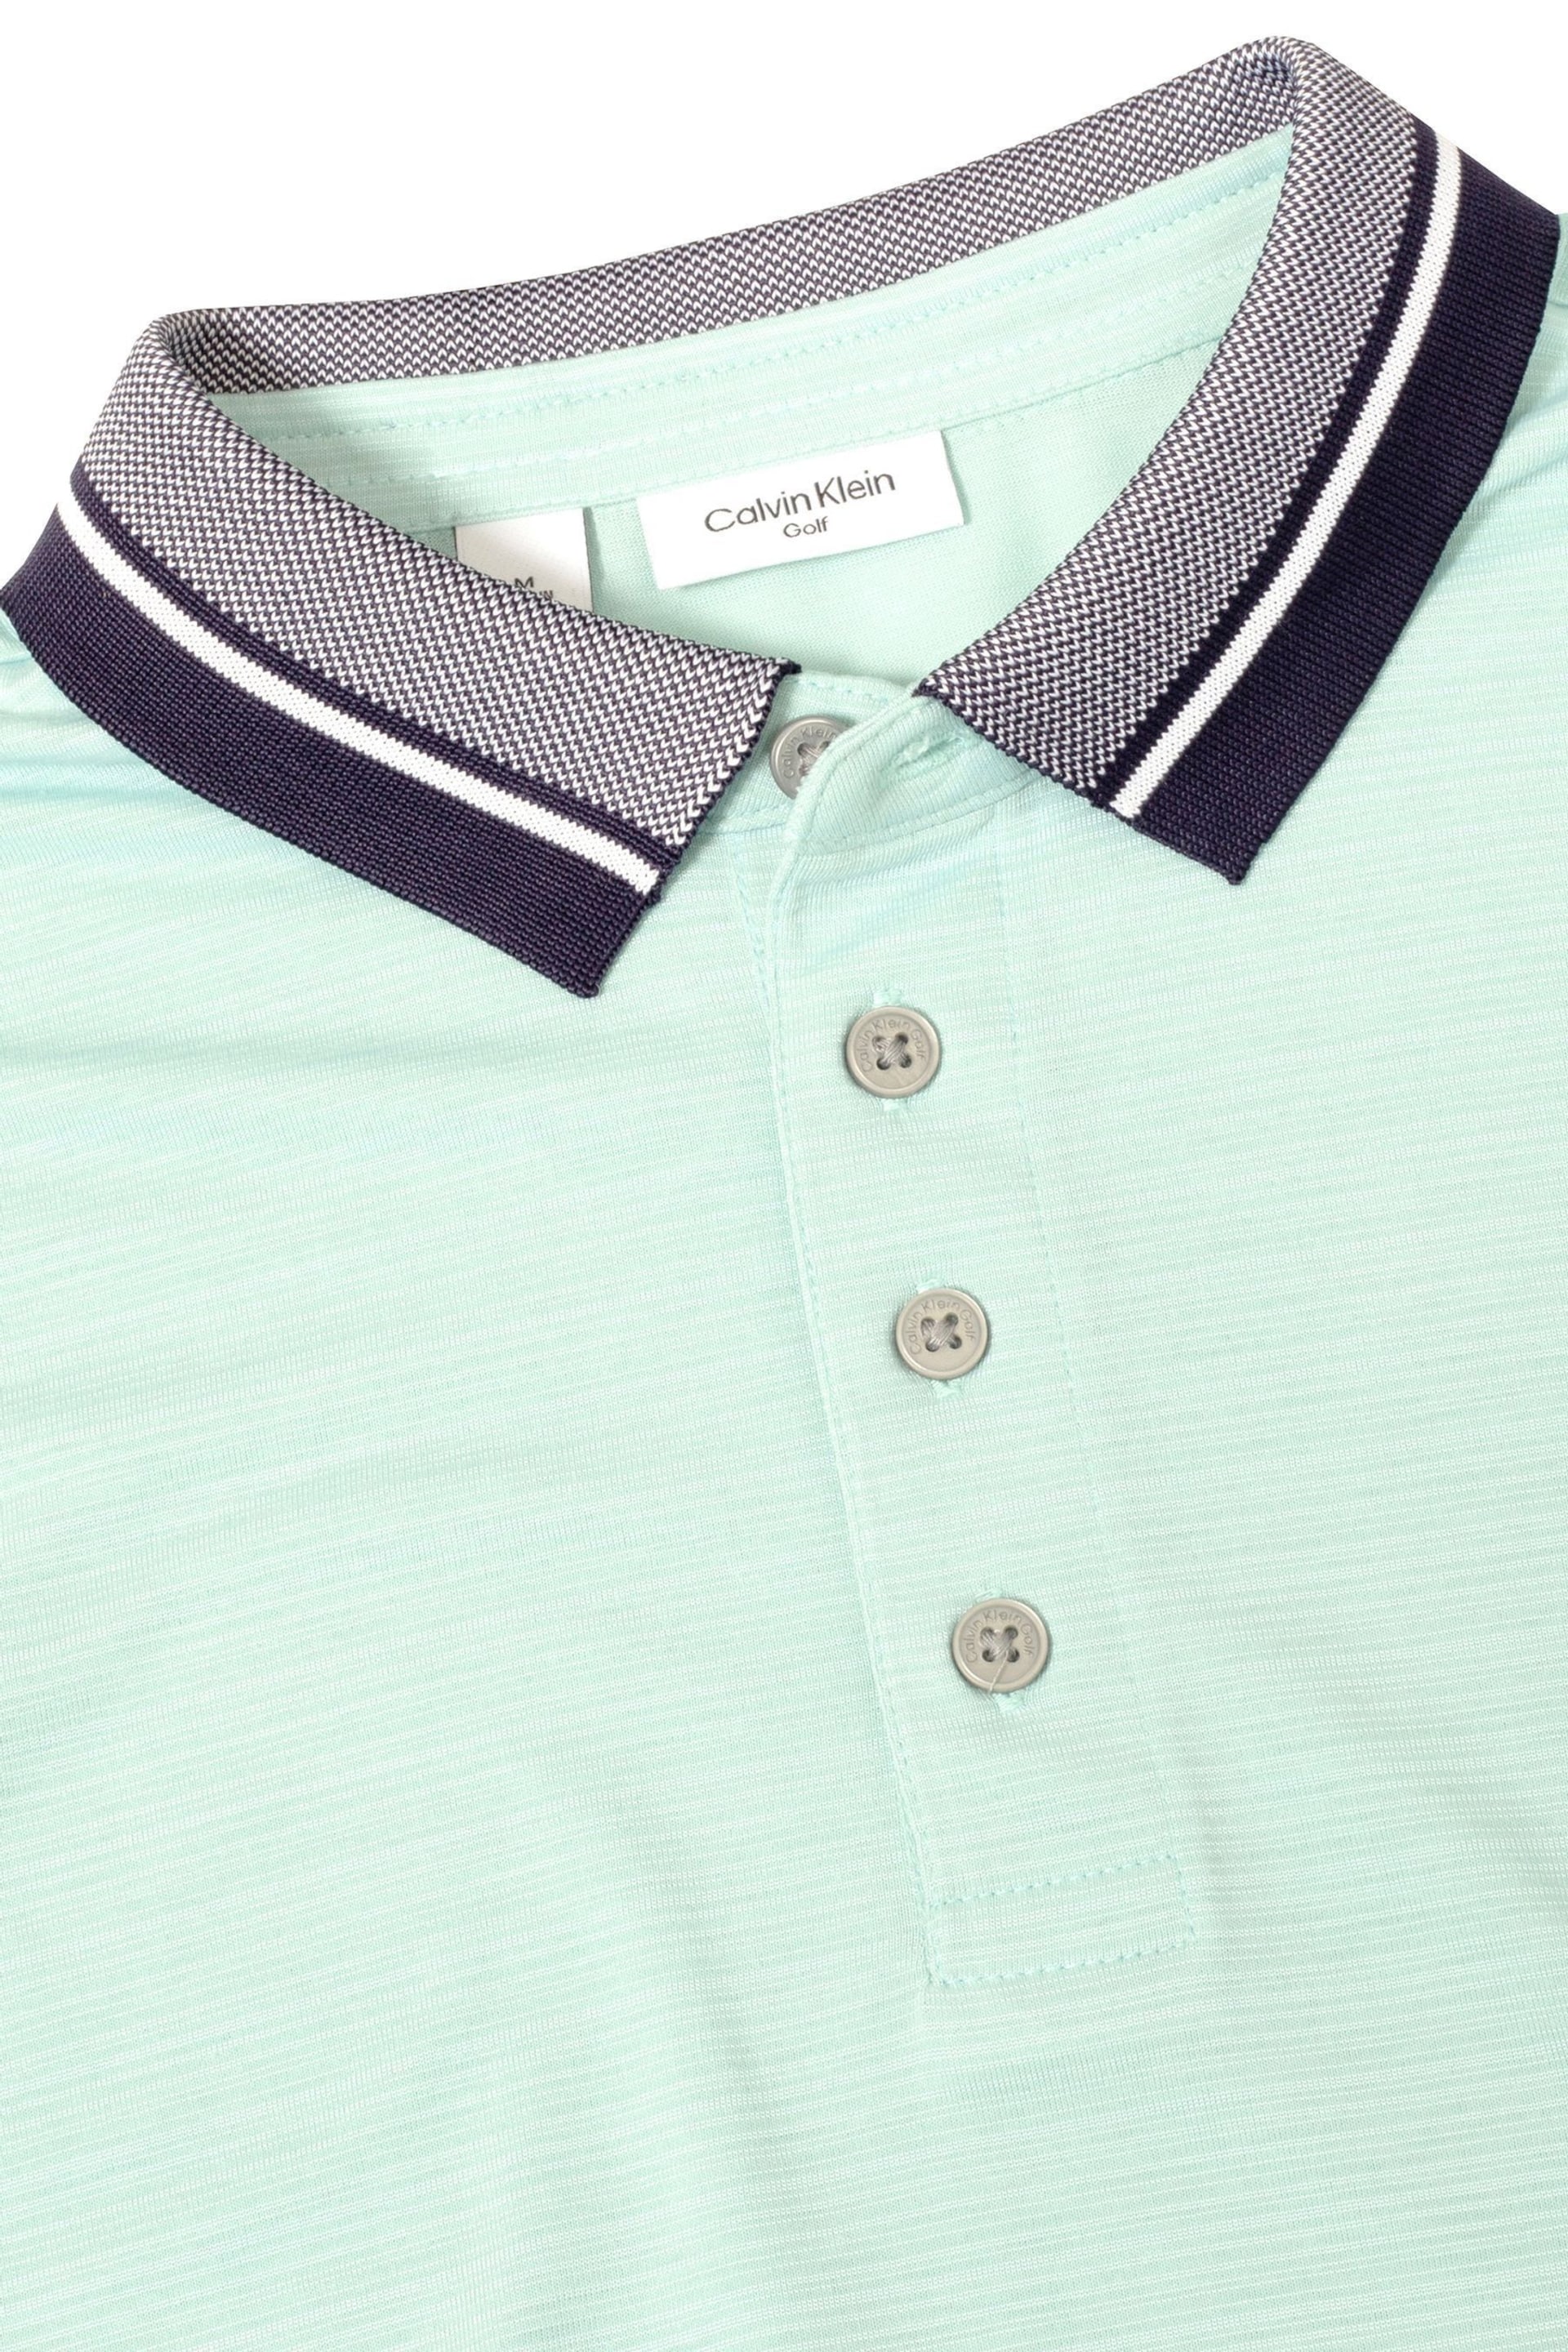 Calvin Klein Golf Navy Parramore Polo Shirt - Image 11 of 12